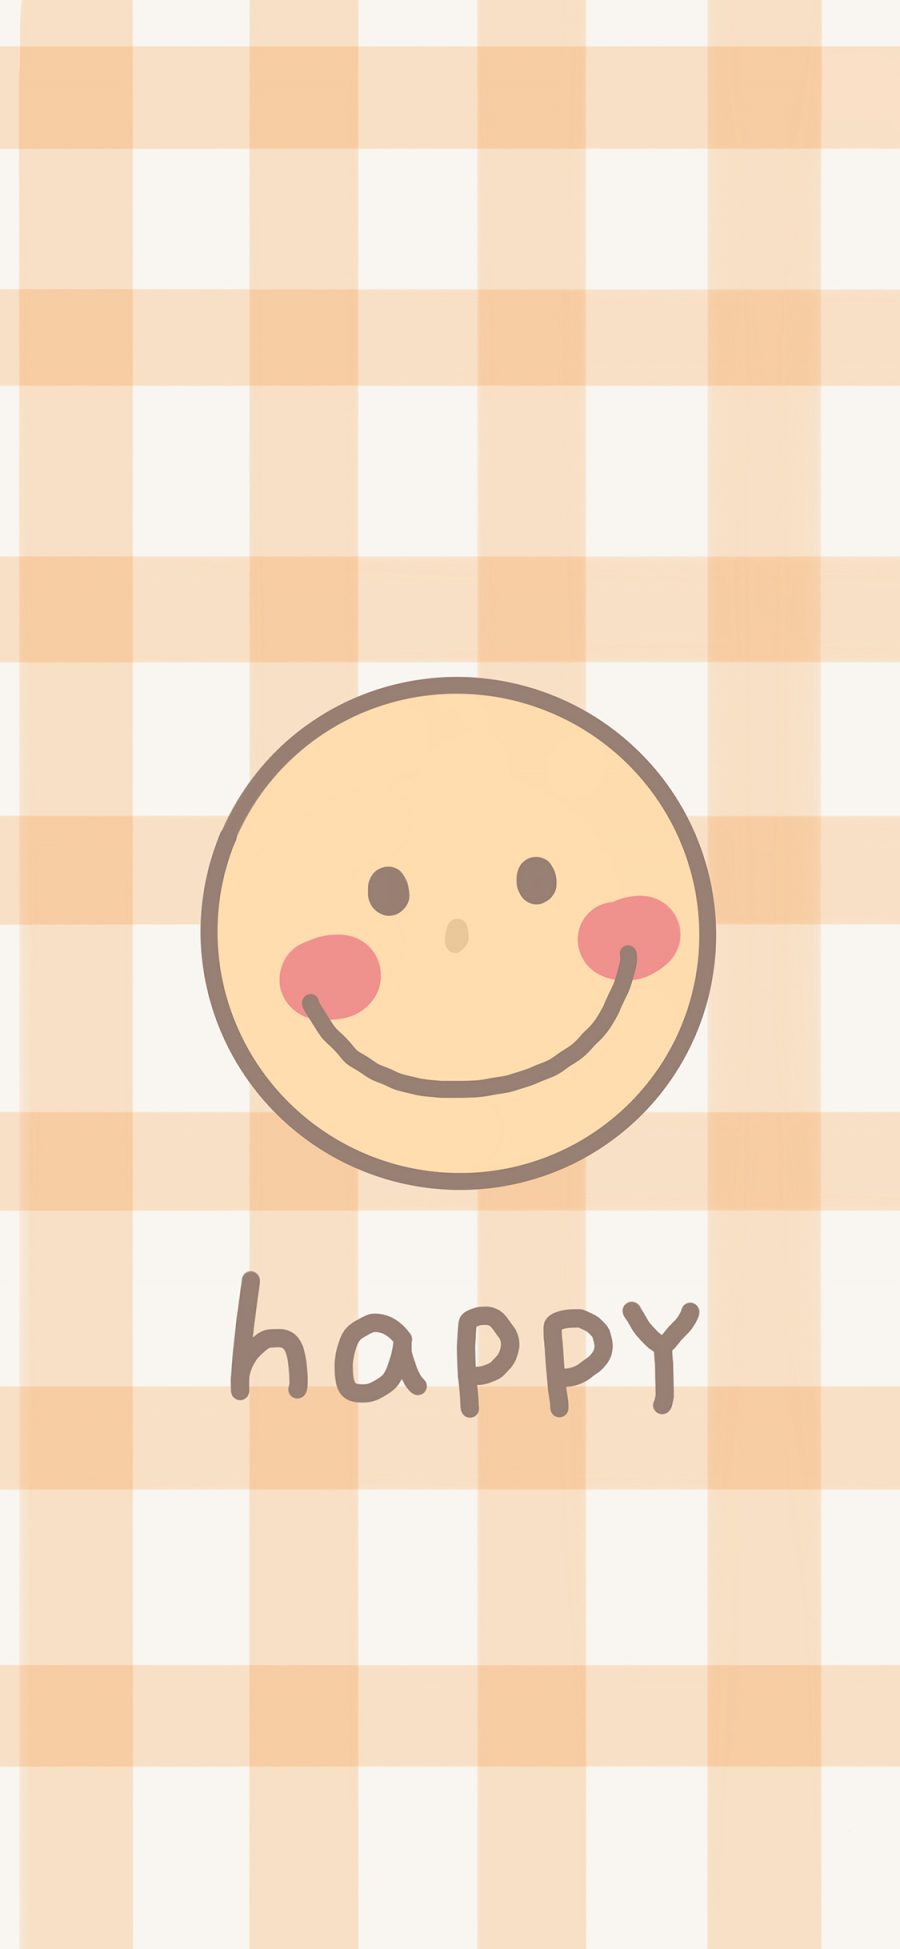 [2436×1125]笑脸 happy 方格 表情 苹果手机动漫壁纸图片